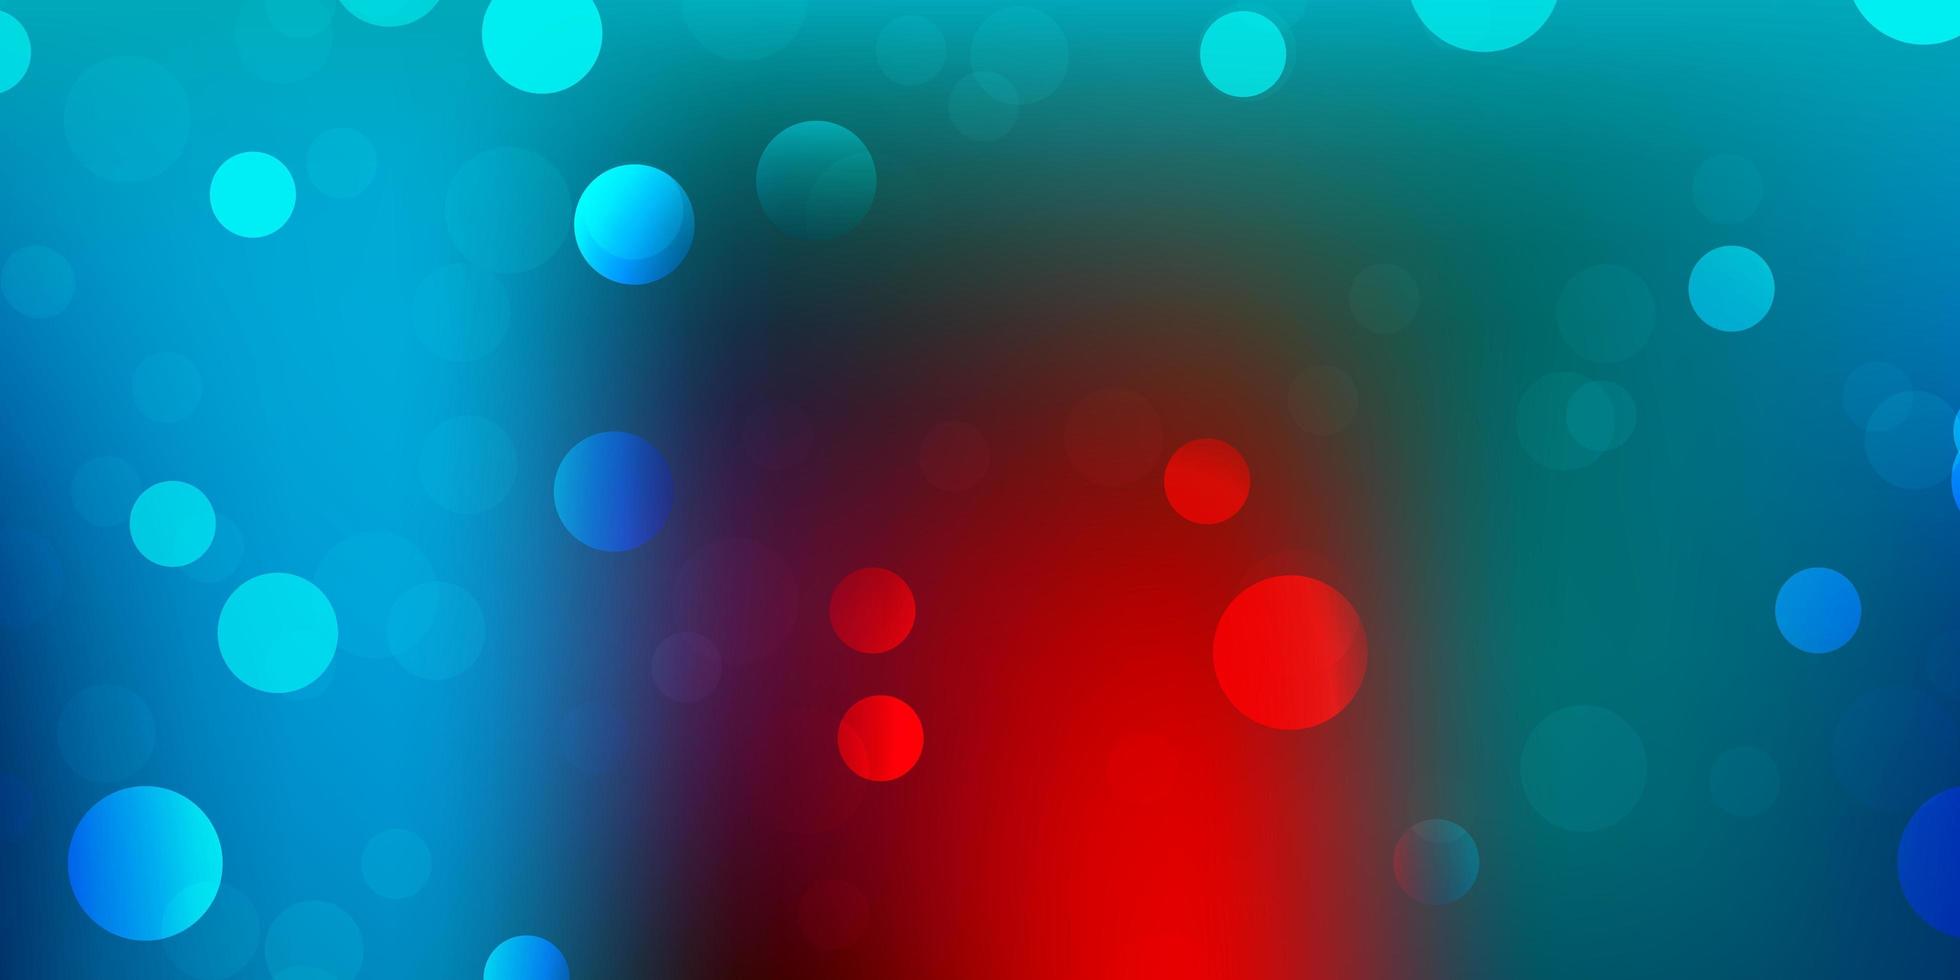 ljusblå, röd vektorbakgrund med slumpmässiga former. vektor